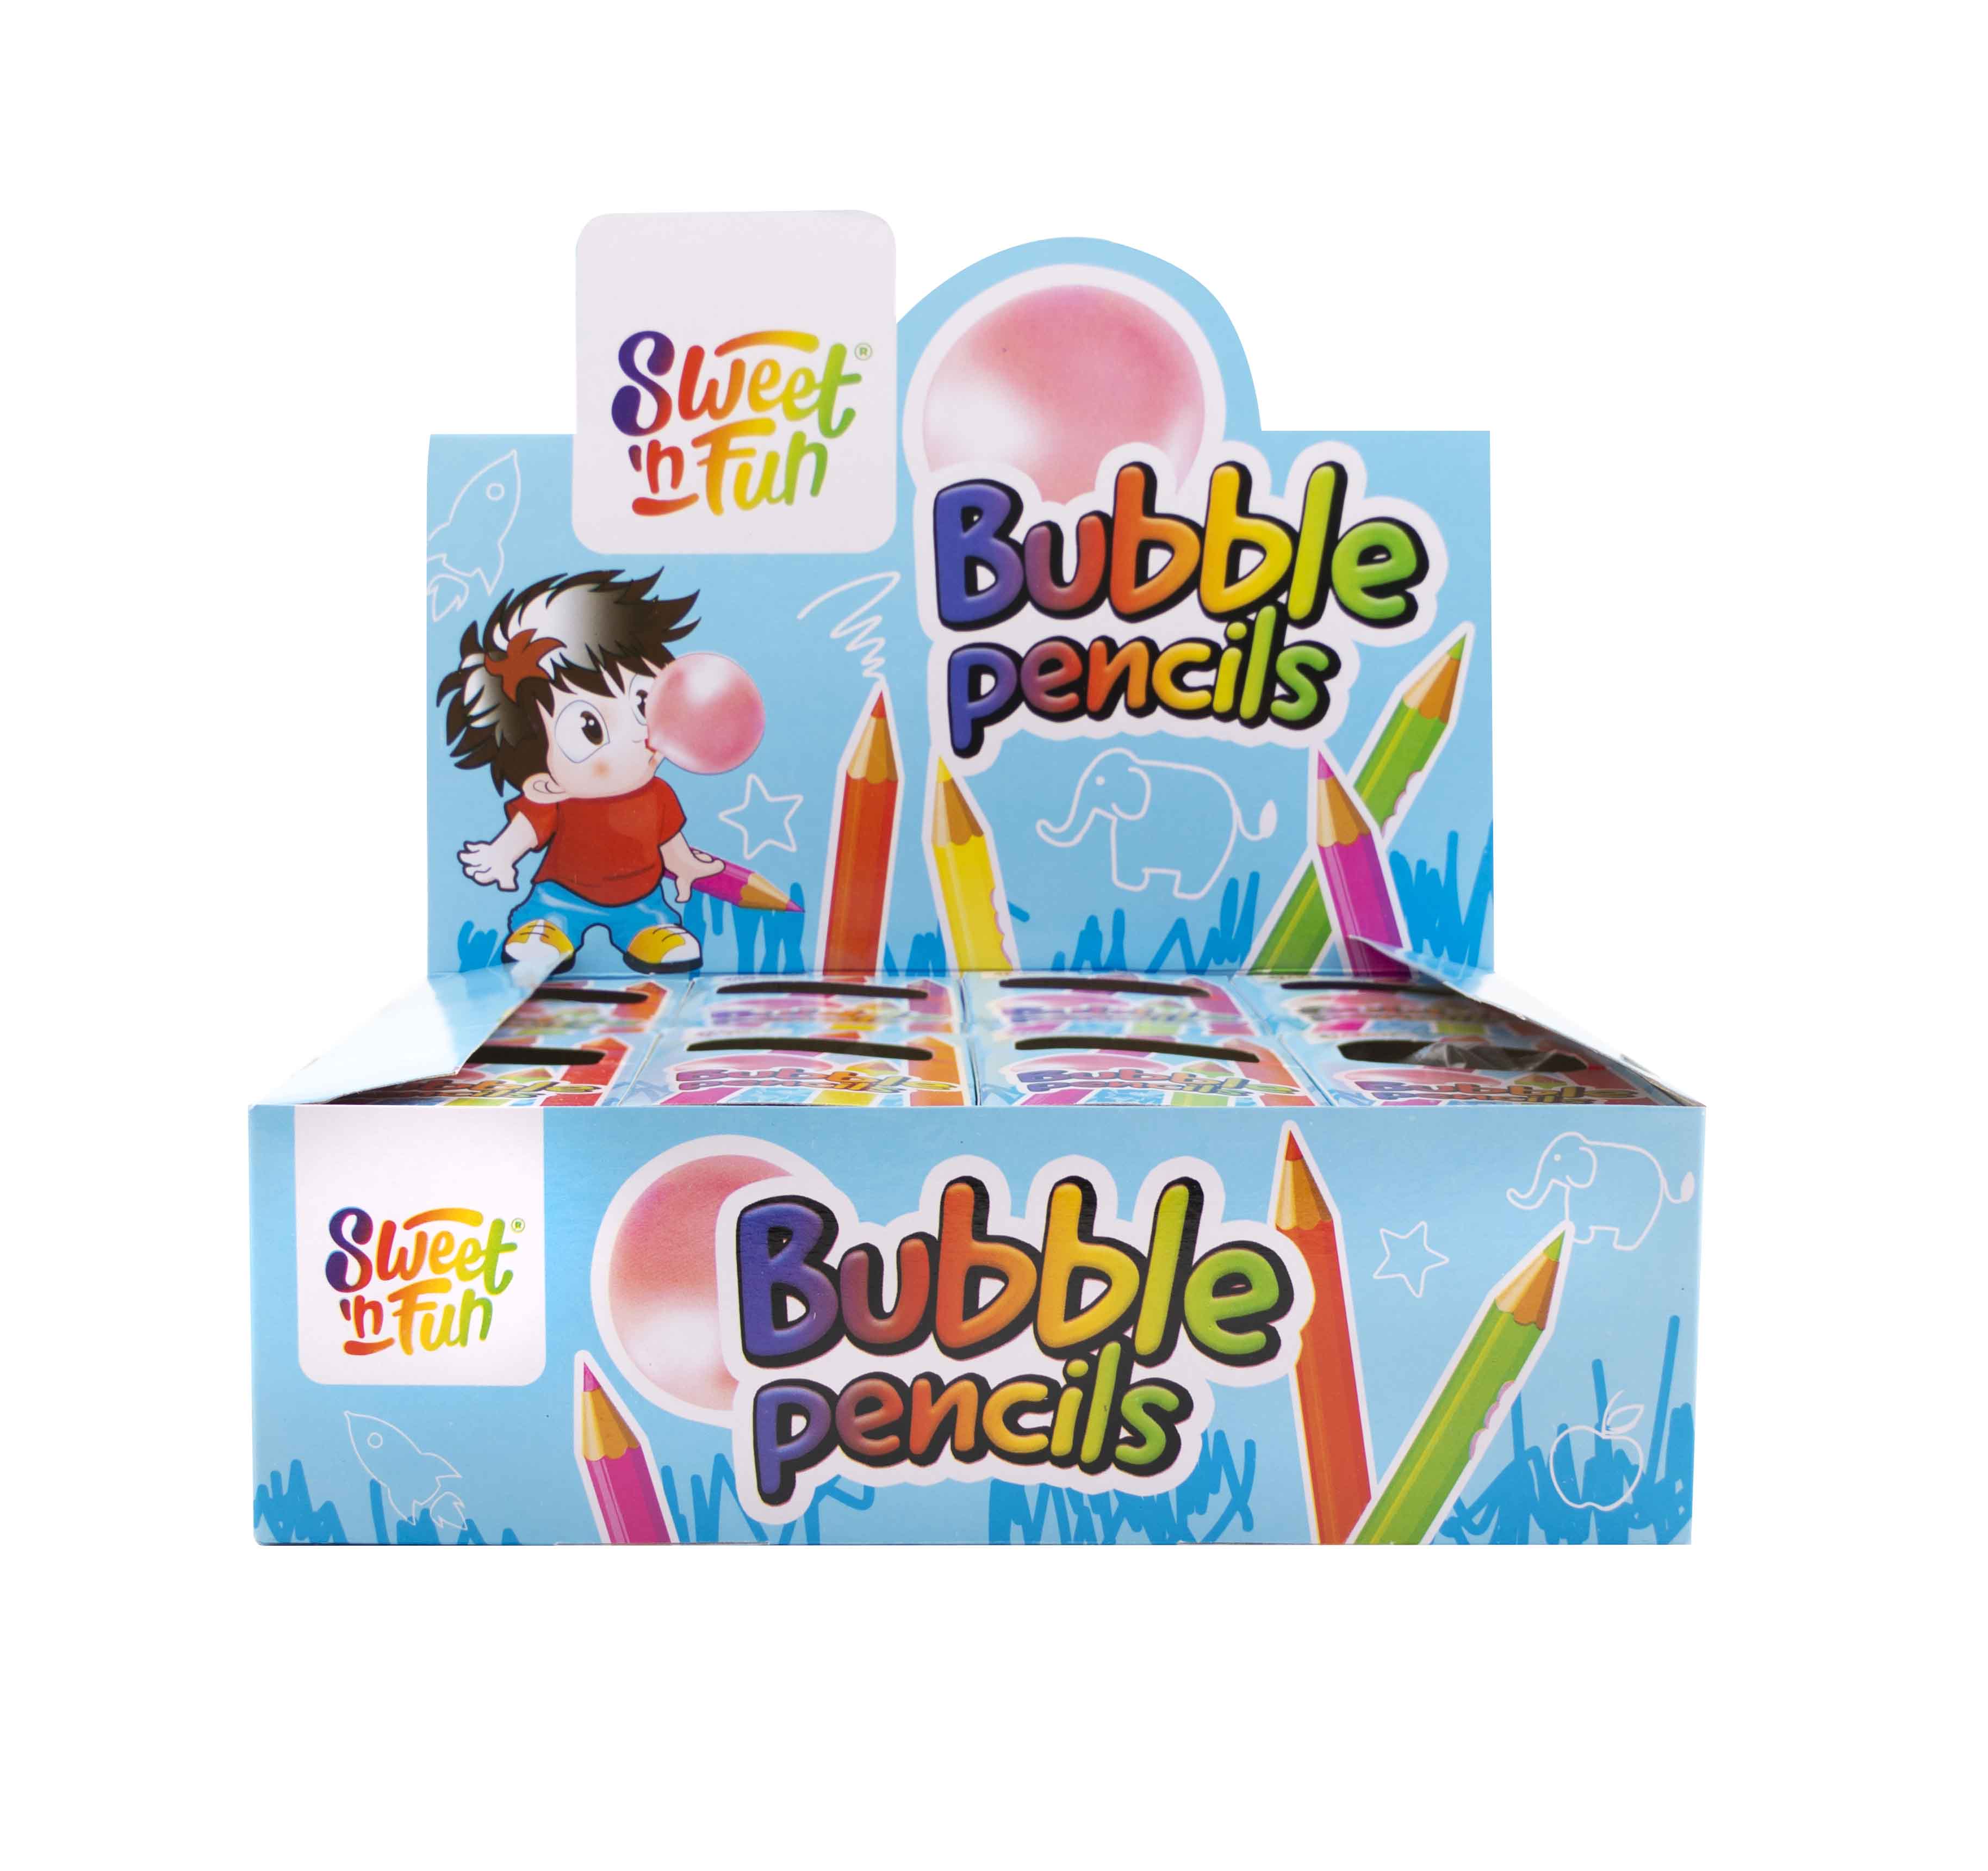 Bubble pencils - žvýkačky pastelky 15g